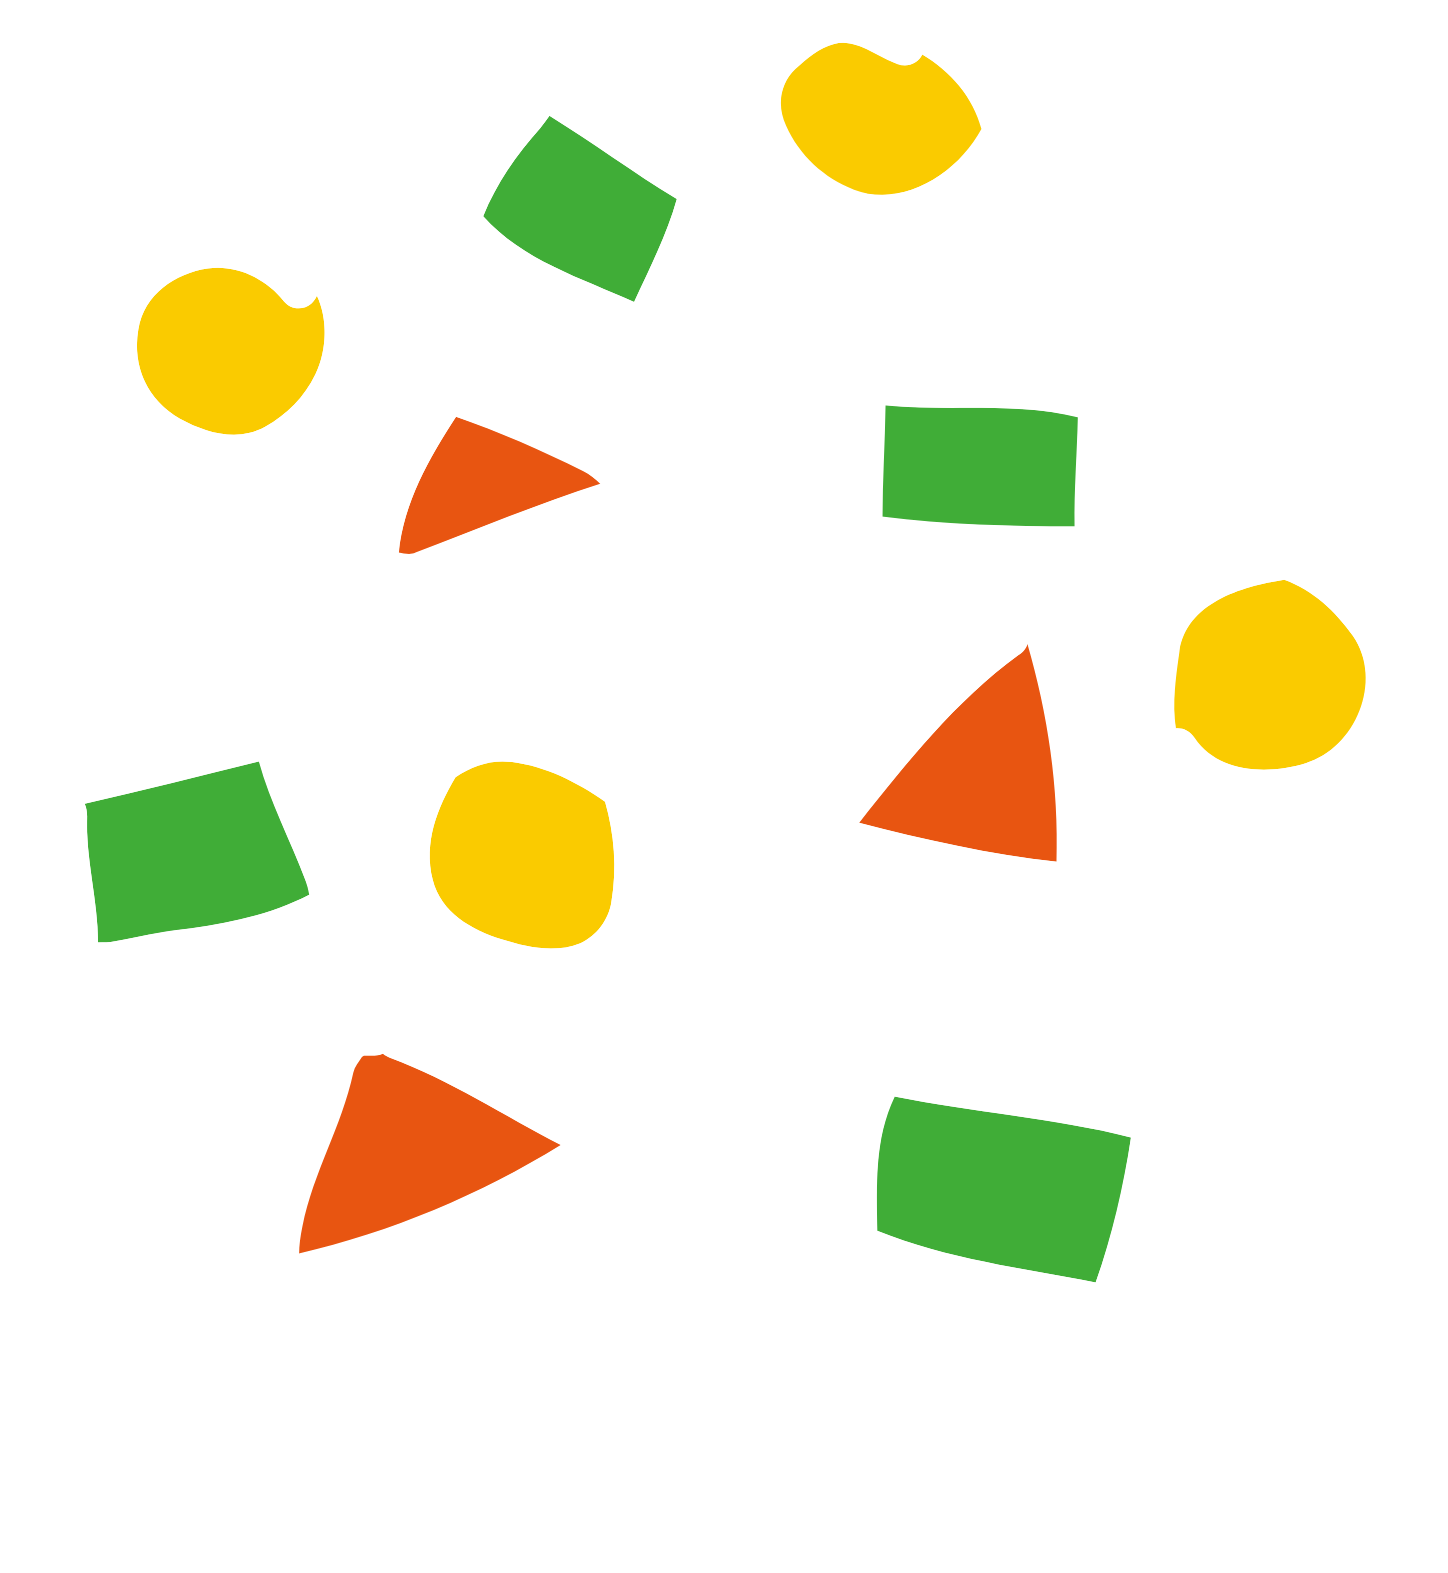 Accton Technology logo pour fonds sombres (PNG transparent)